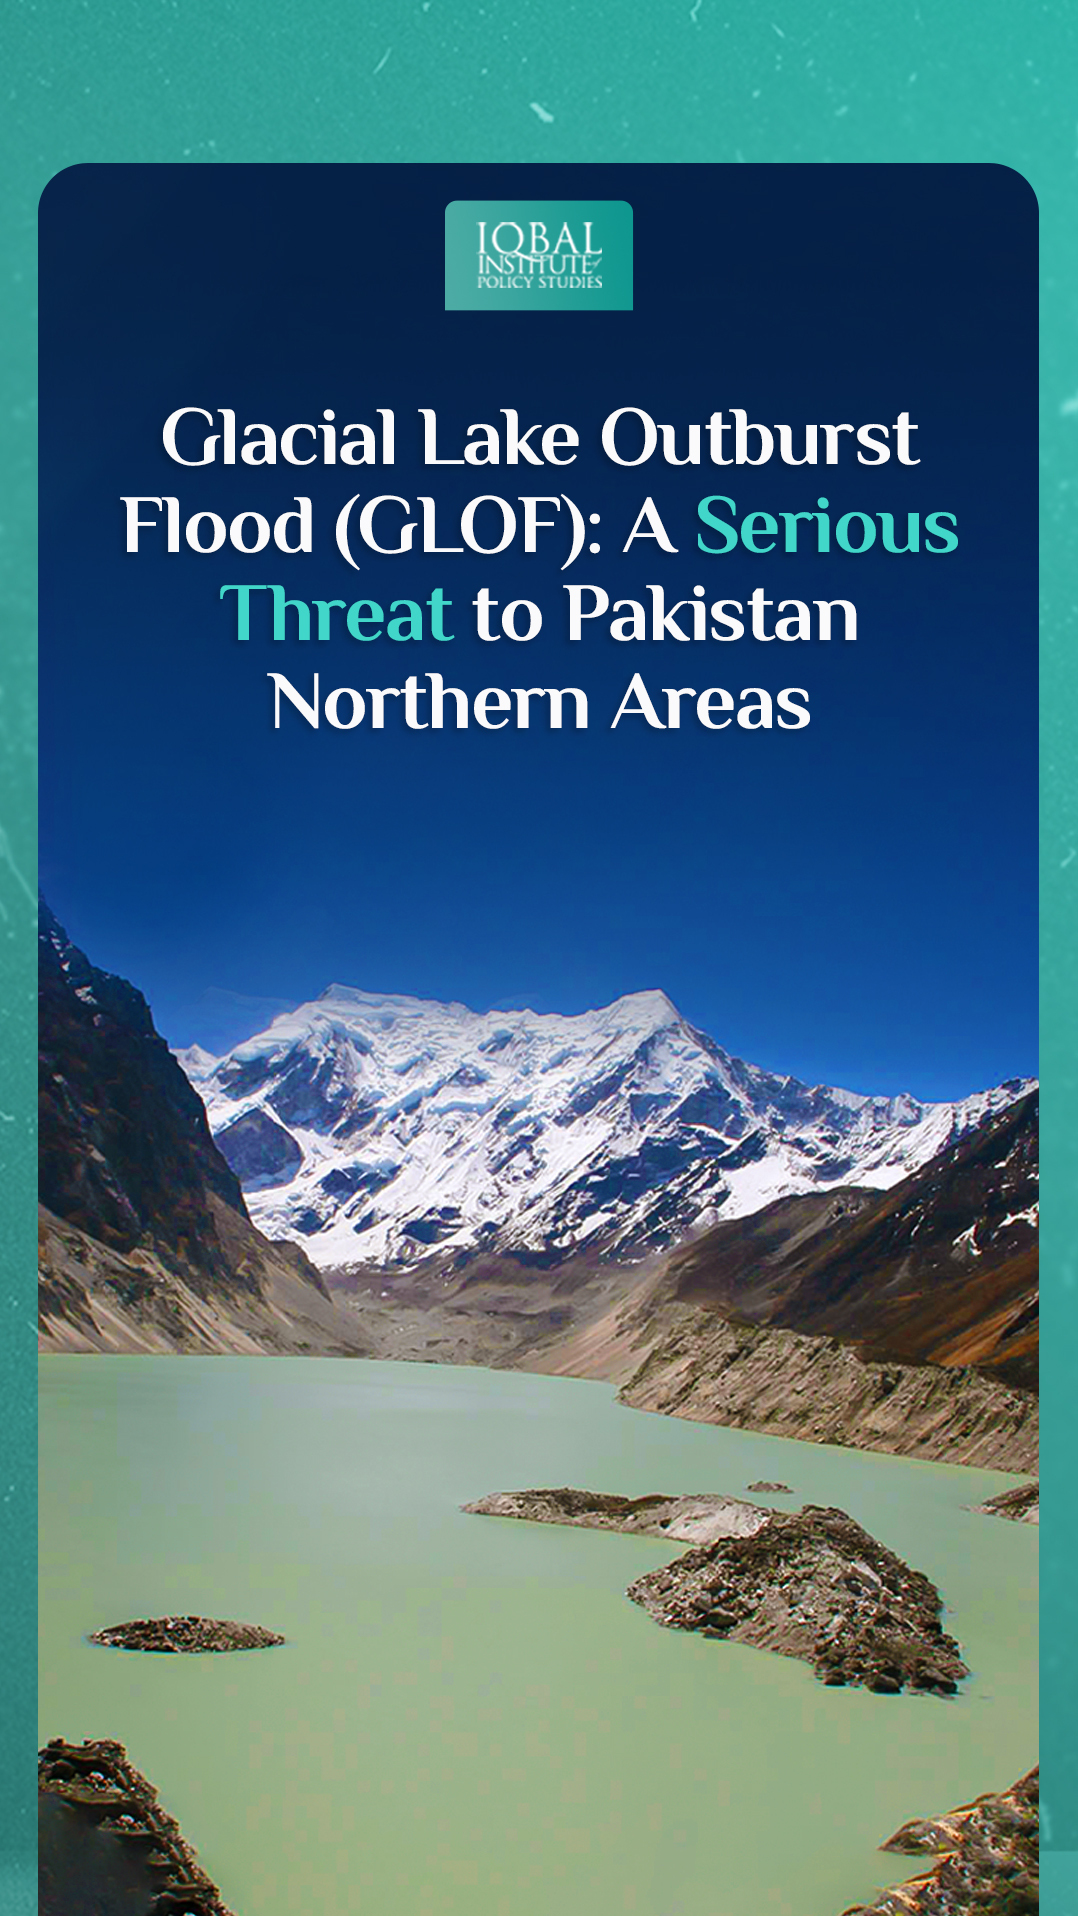 Glacial Lake Outburst Flood (GLOF): A serious threat to Pakistan Northern areas